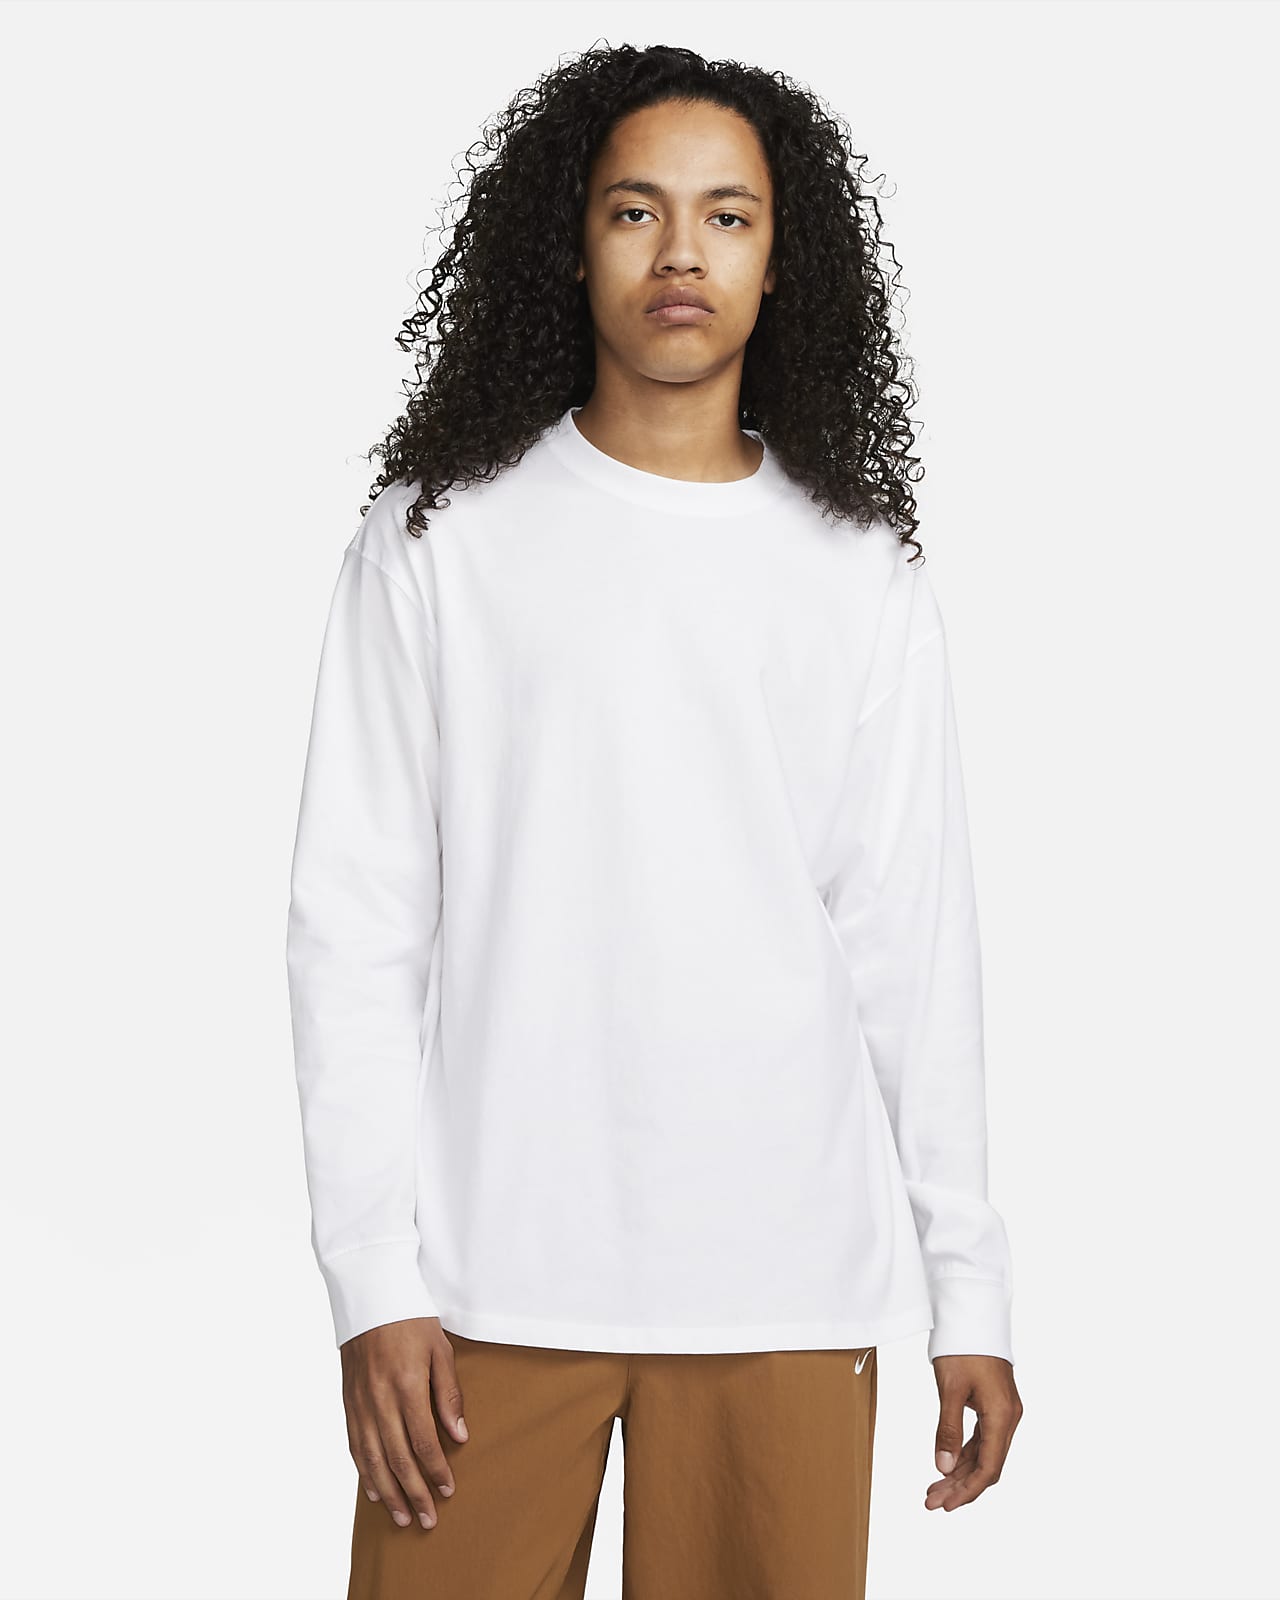 Nike SB Long-Sleeve Skate T-Shirt